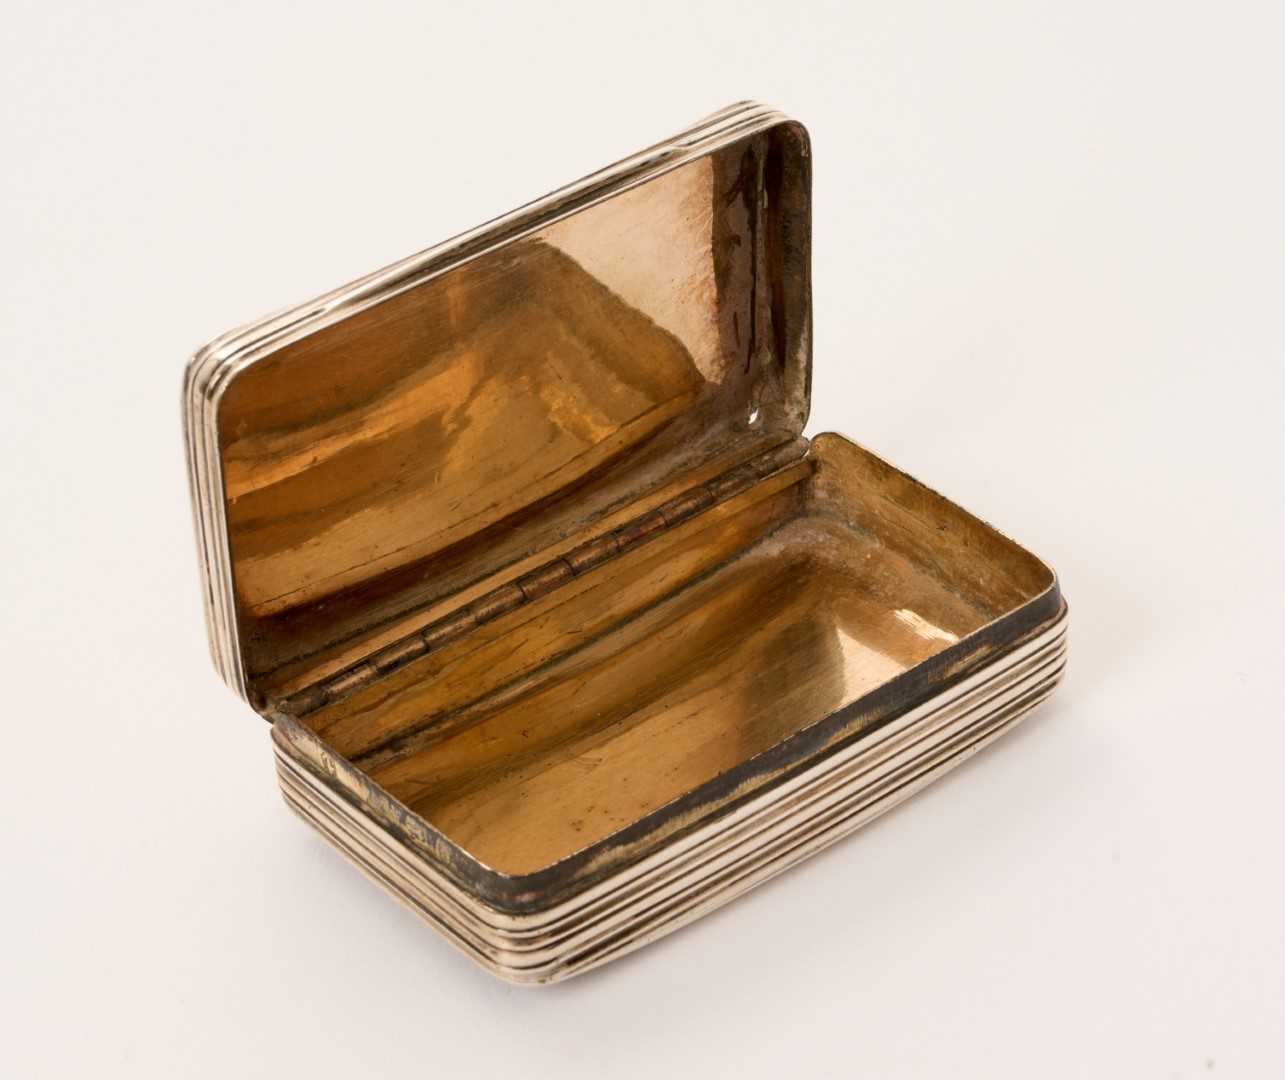 George III silver snuff box - Image 3 of 3